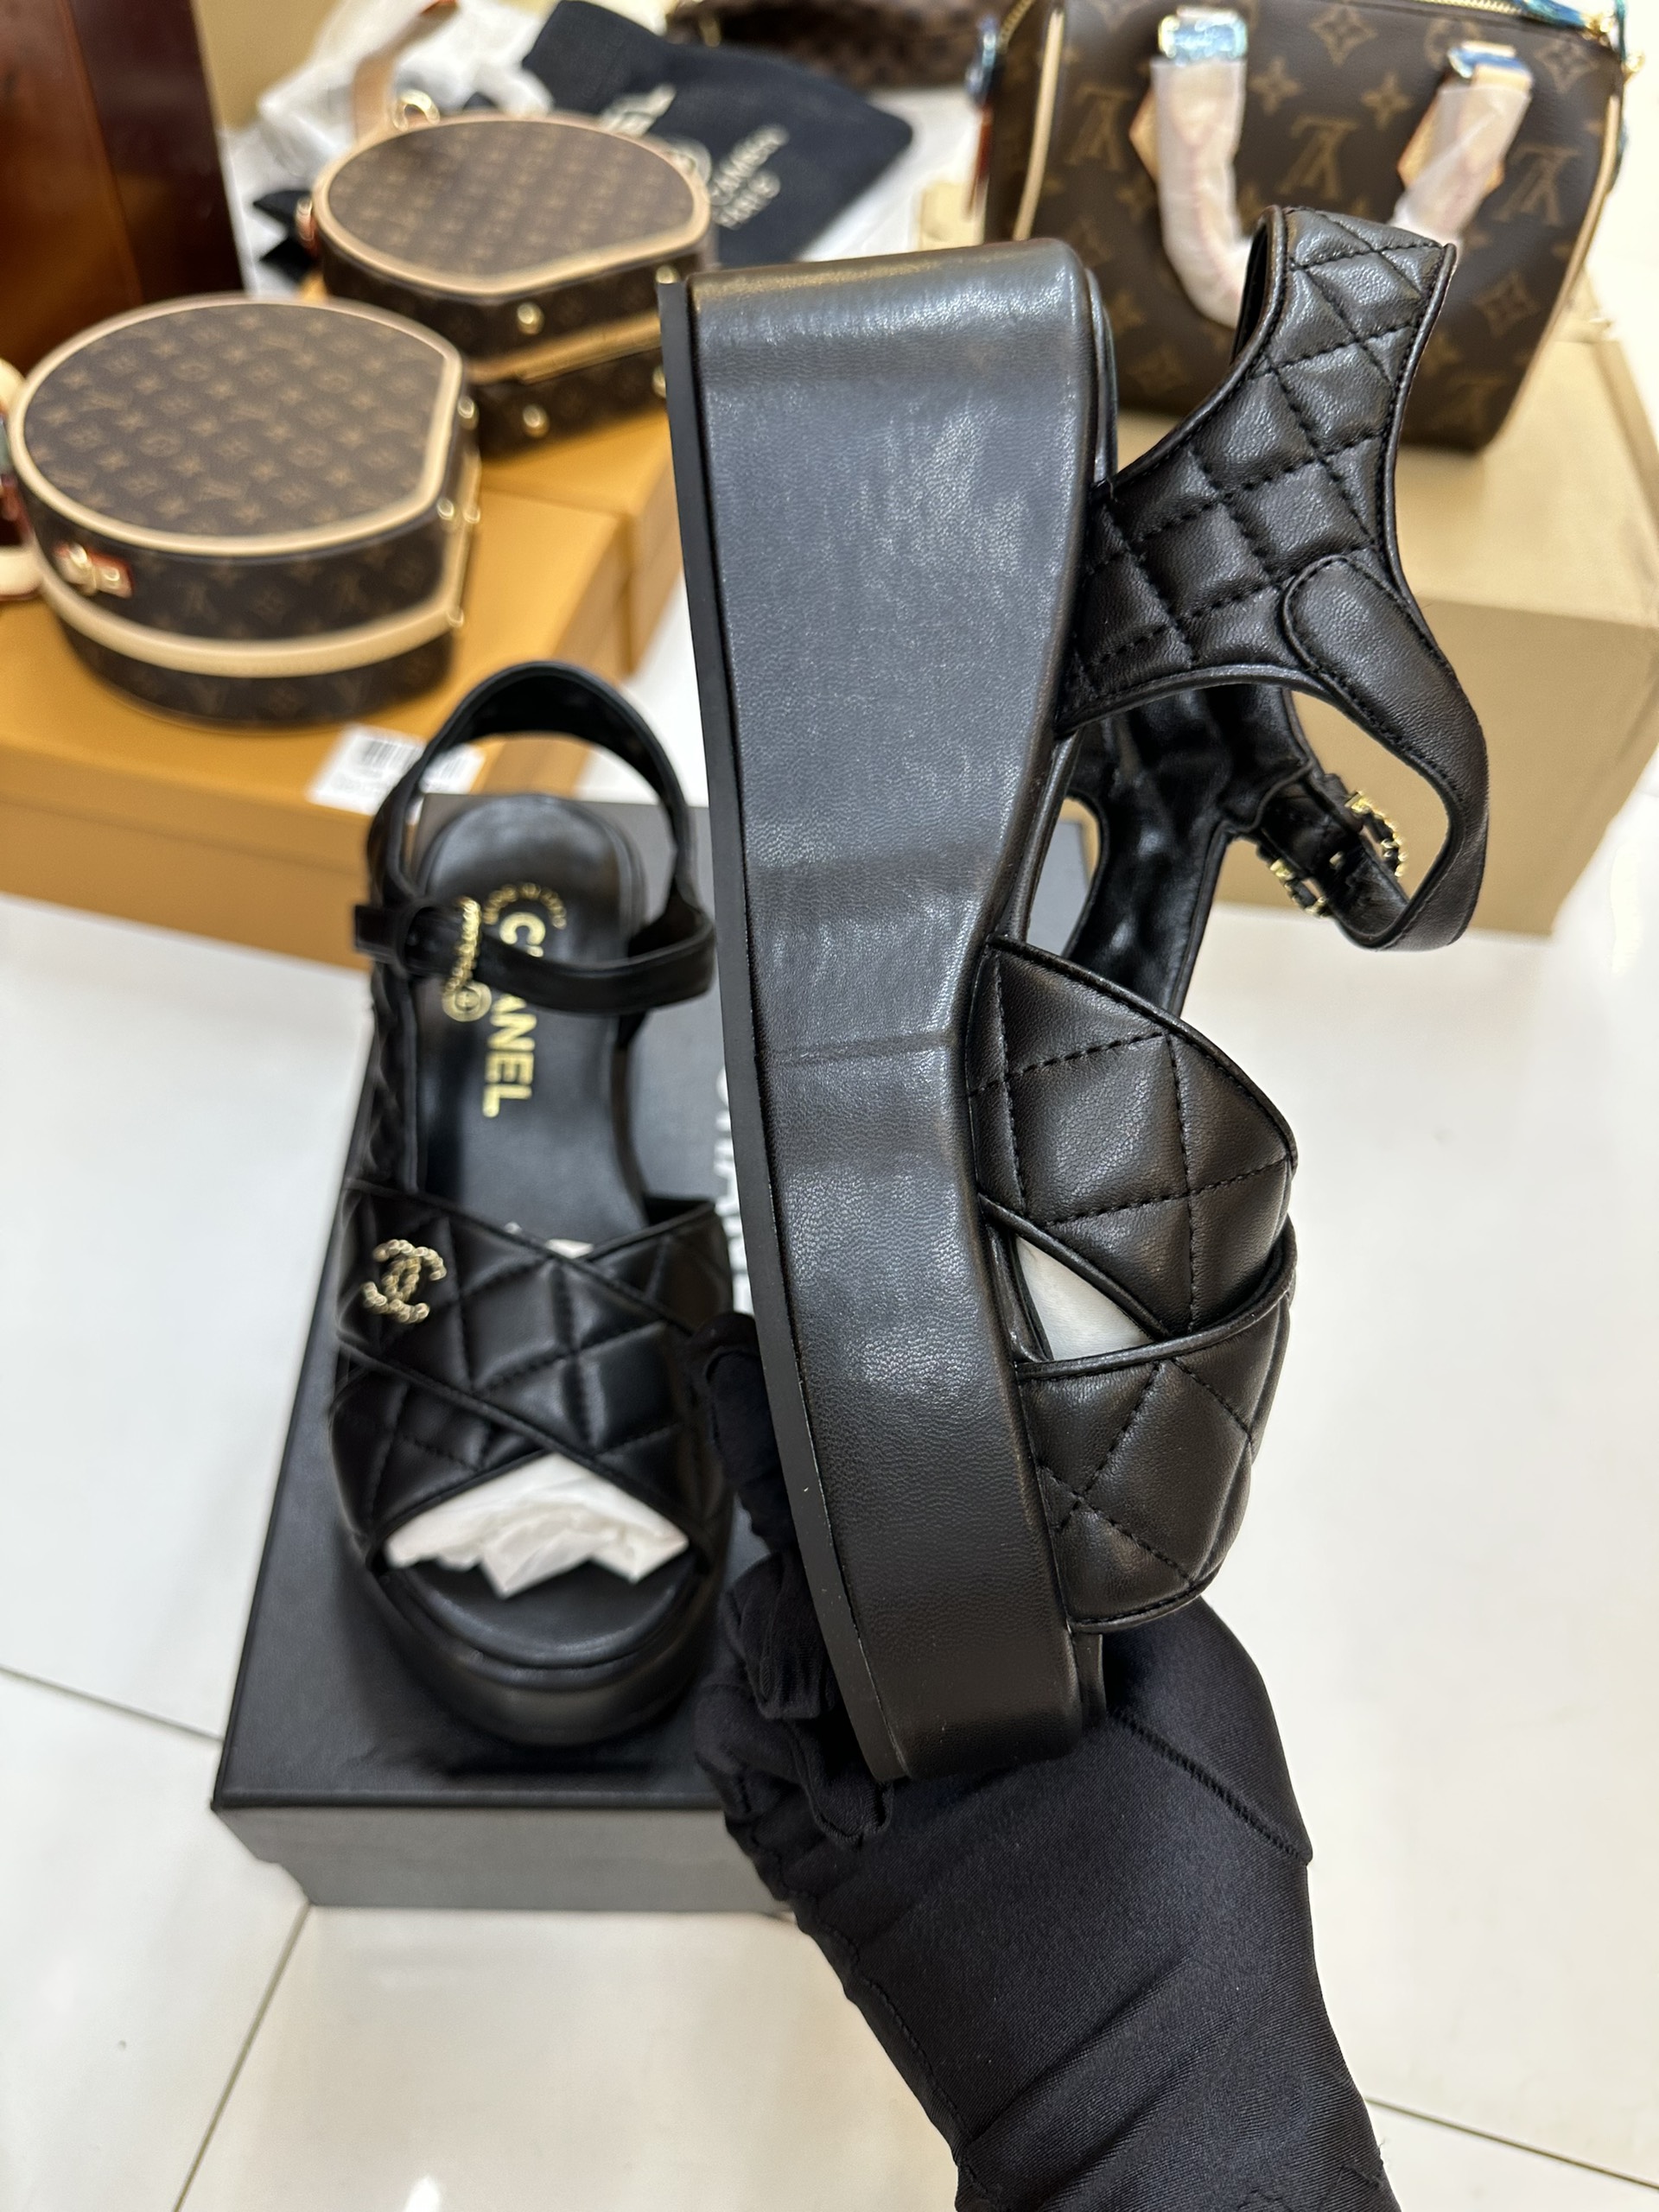 Giày Sandal Đế Xuồng Chanel Siêu Cấp Màu Trắng Size 39